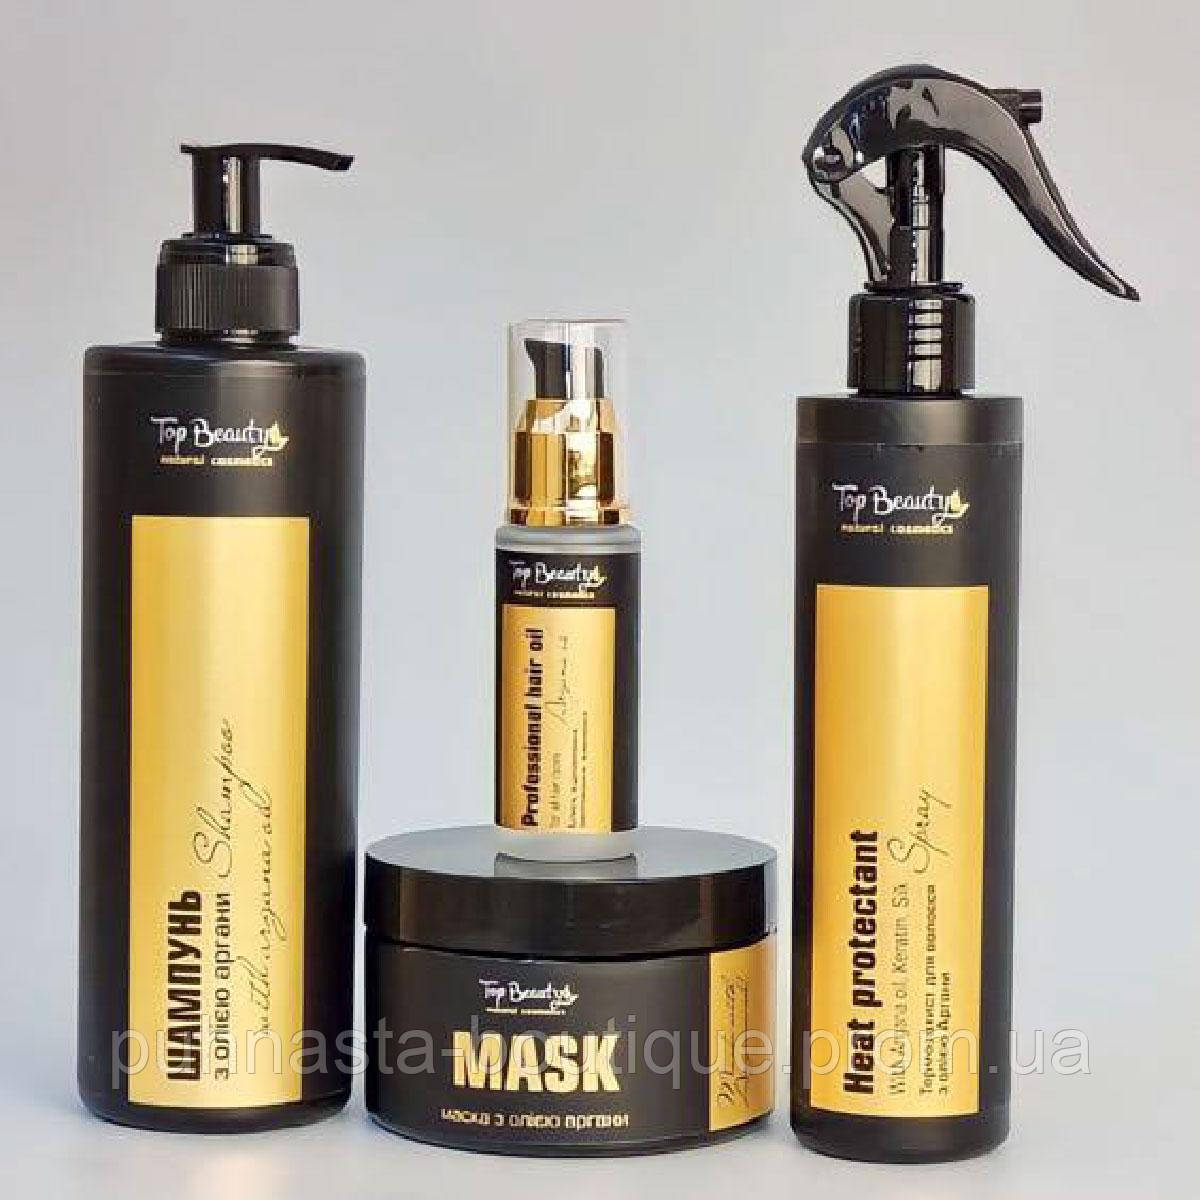 Набір для догляду за волоссям від Top Beauty з маслом аргани (шампунь, маска, олія, термозахист)